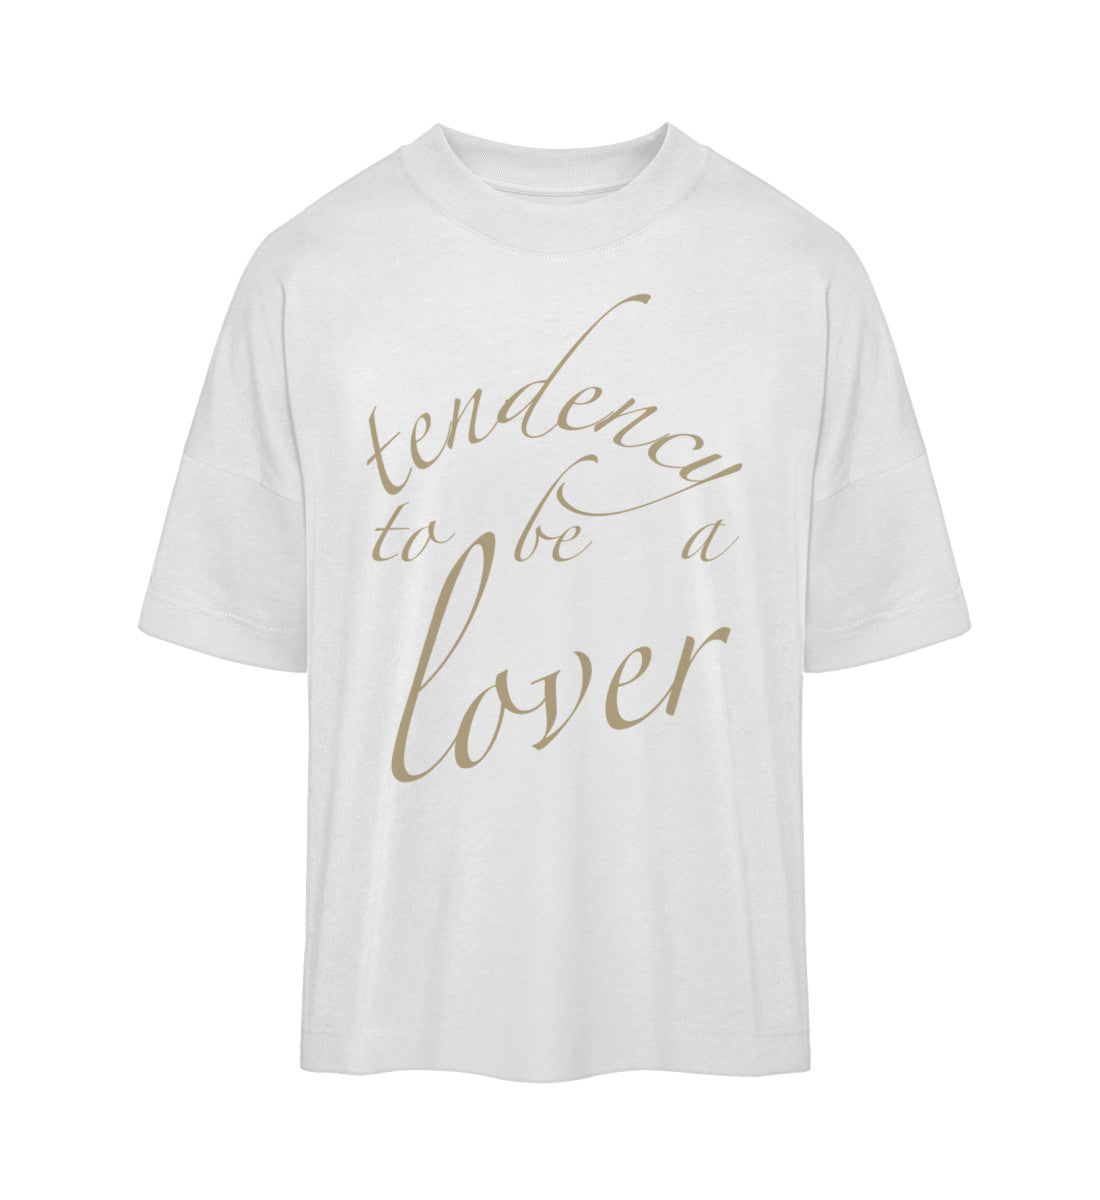 Weißes T-Shirt im Unisex Oversize Fit für Frauen und Männer bedruckt mit dem Design der Roger Rockawoo Kollektion Tendency to be a Lover